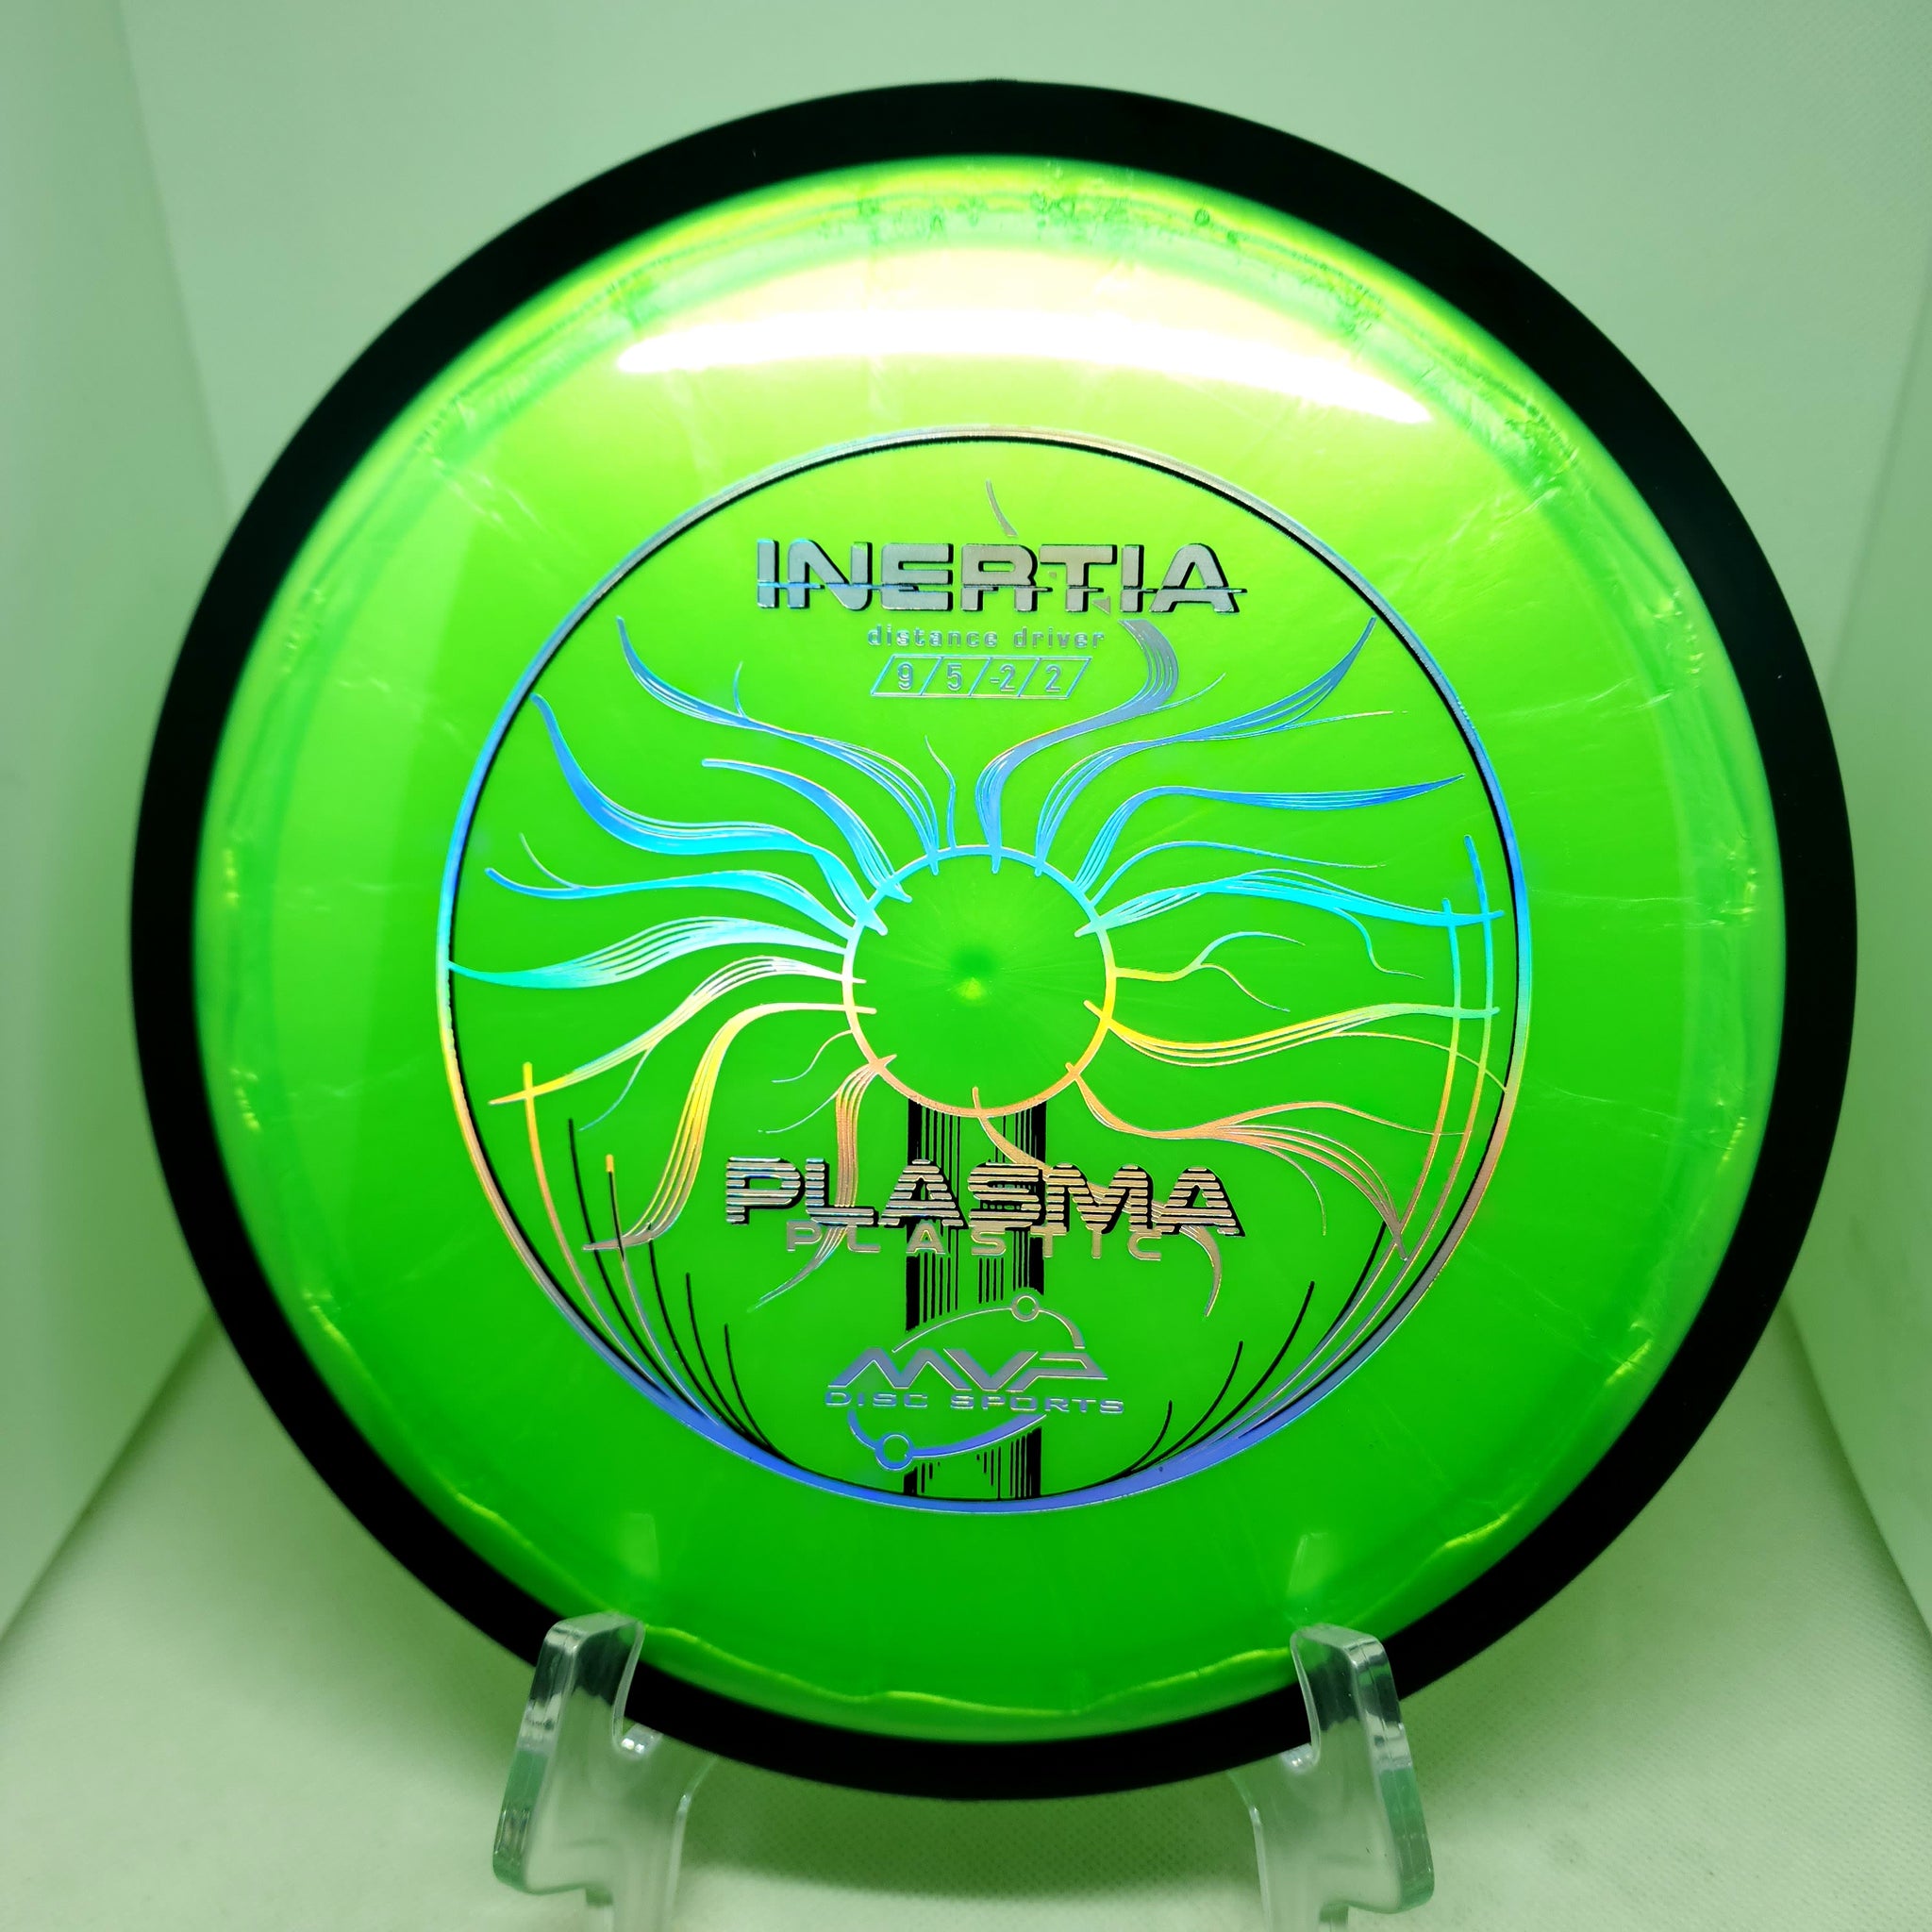 Inertia (Plasma Plastic)